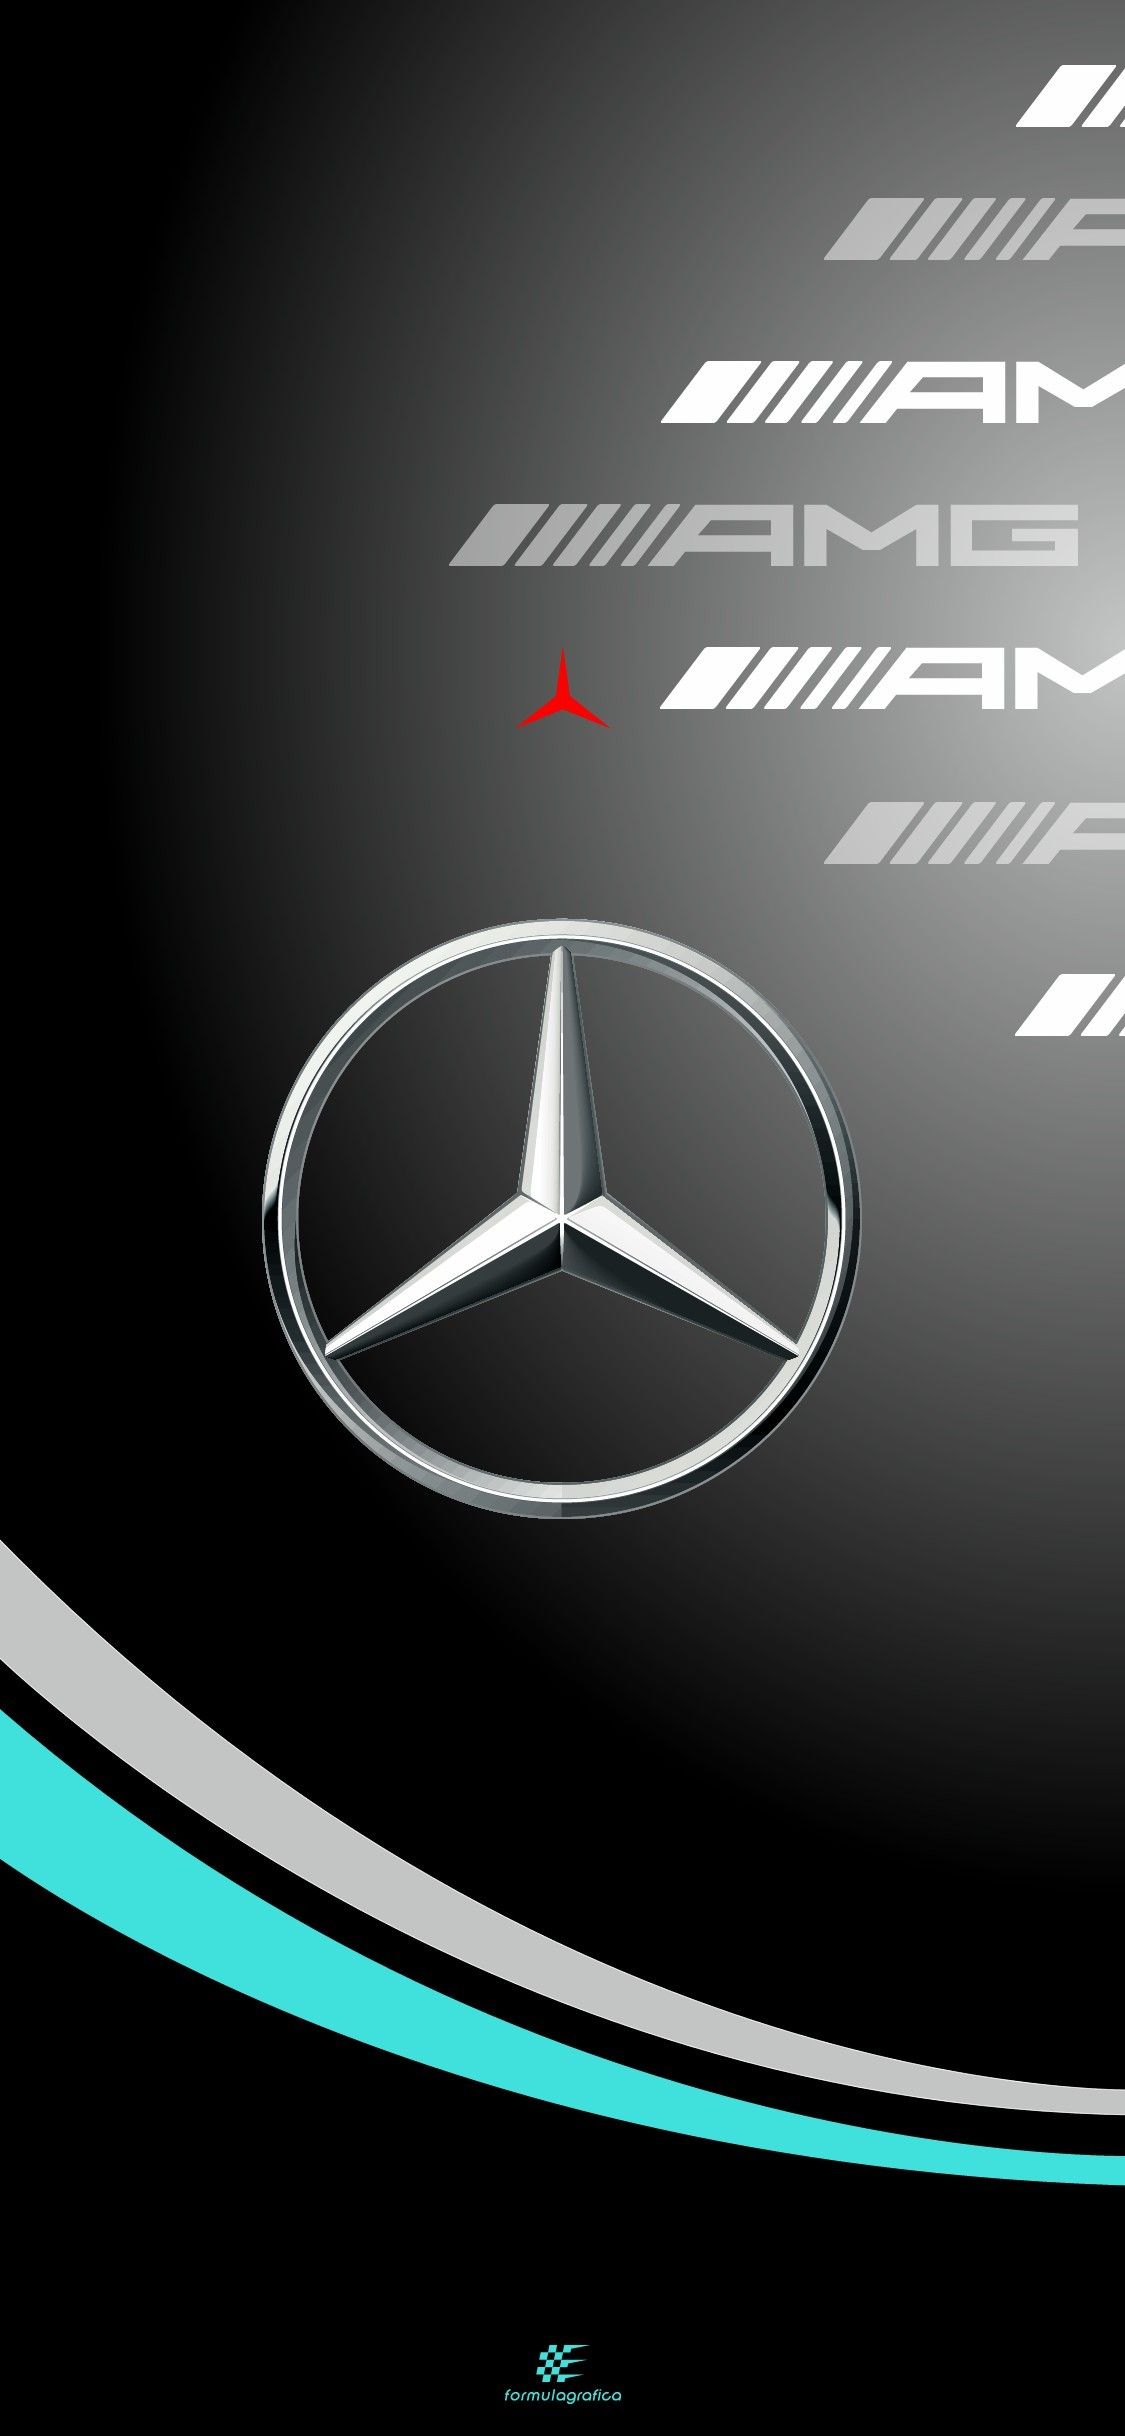 FormulaGrafica AMG Petronas Formula One Team W12 -. Mercedes amg, Mercedes, Amg logo